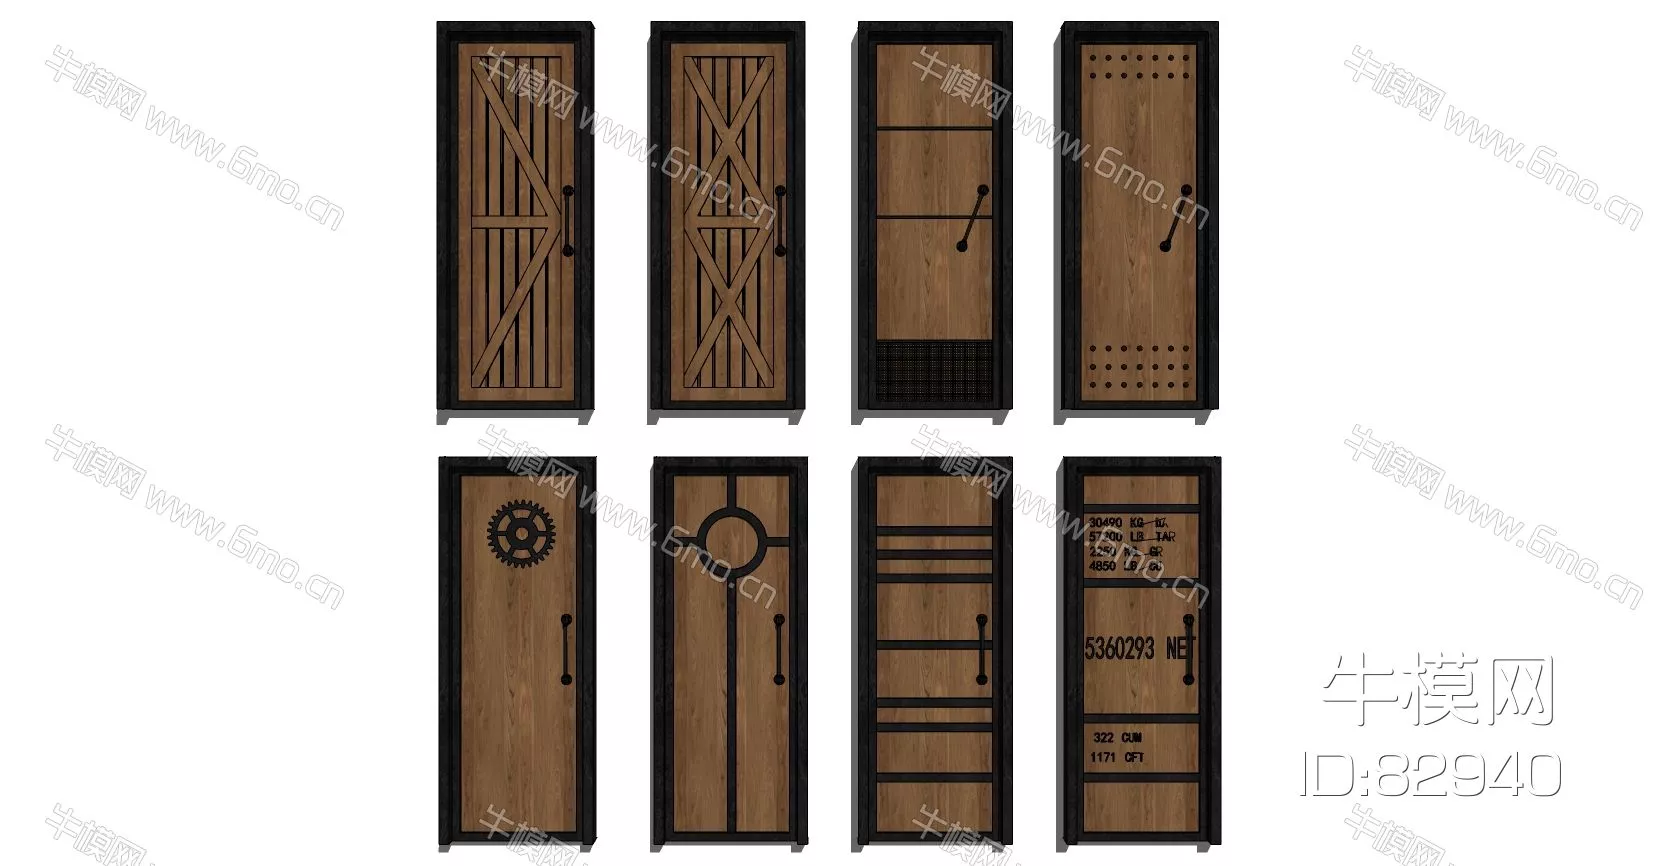 INDUSTRIAL DOOR AND WINDOWS - SKETCHUP 3D MODEL - ENSCAPE - 82940